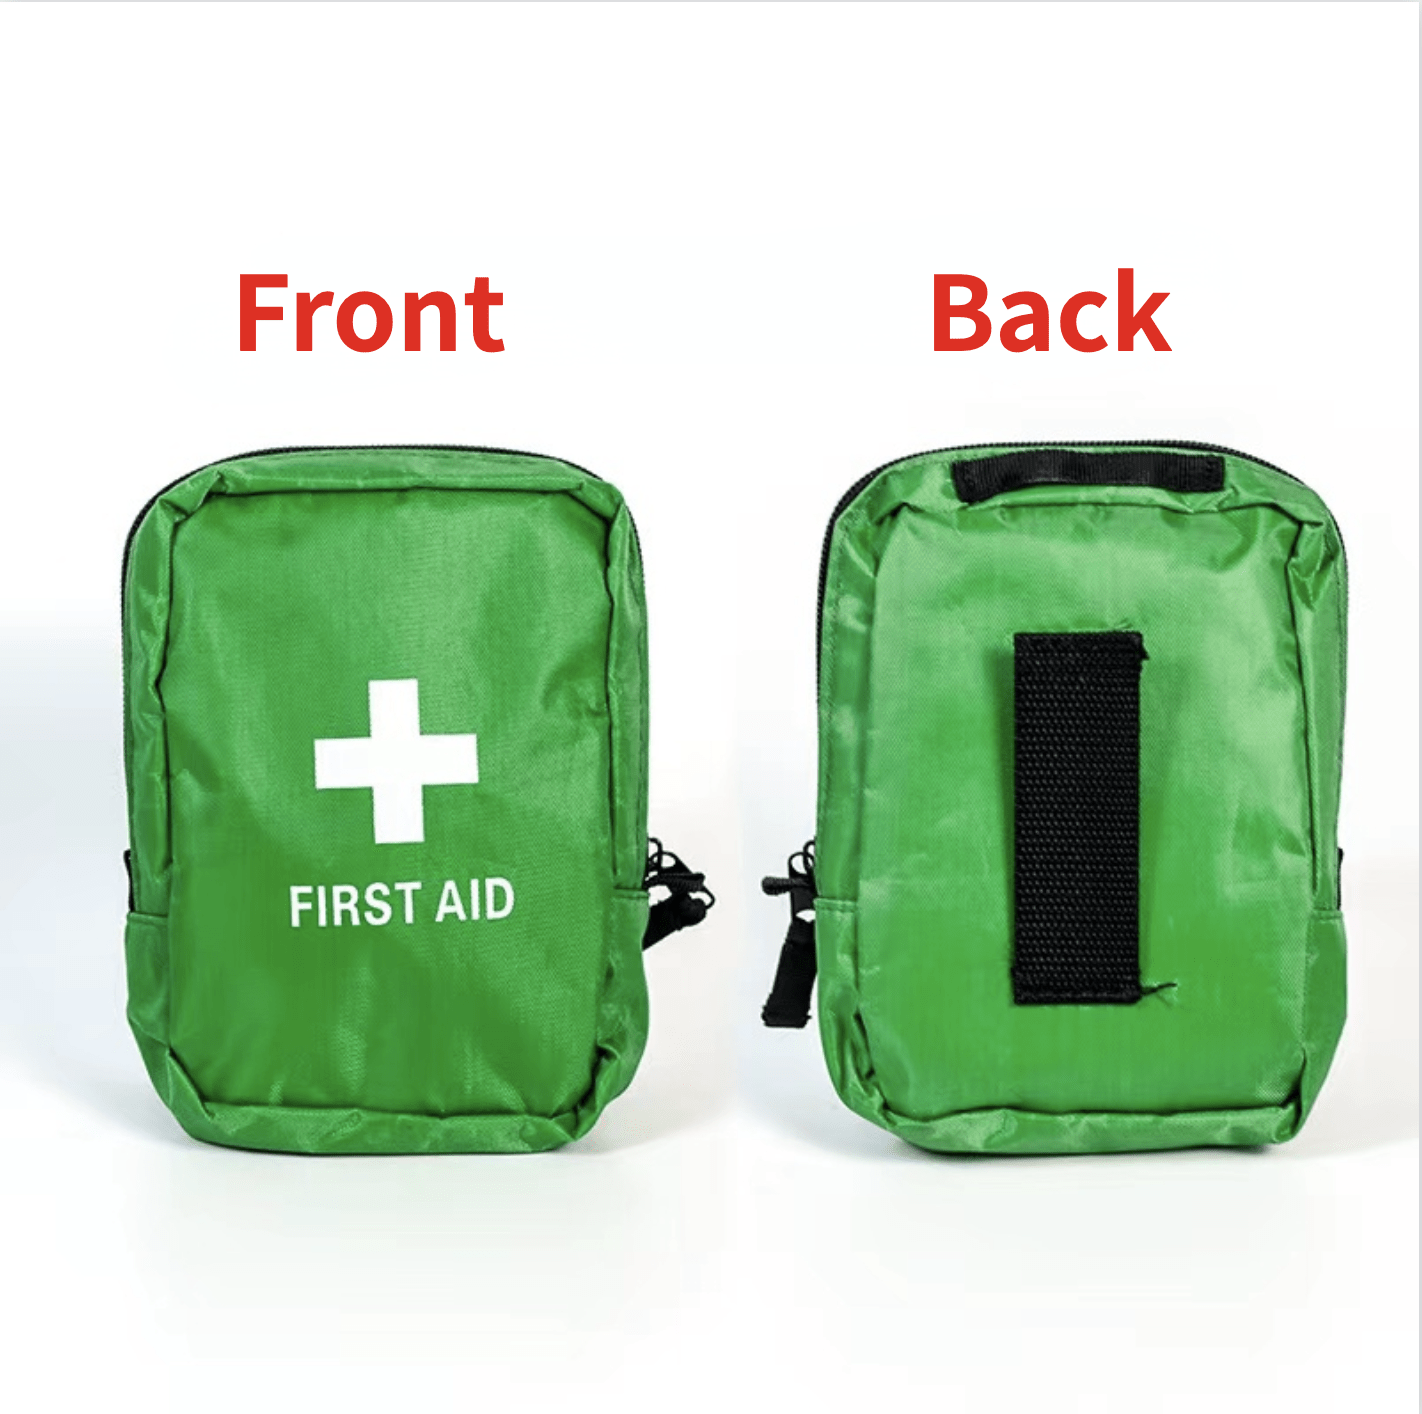 Erste-Hilfe-Set Kleines Erste-Hilfe-Set für Notfall, Zuhause